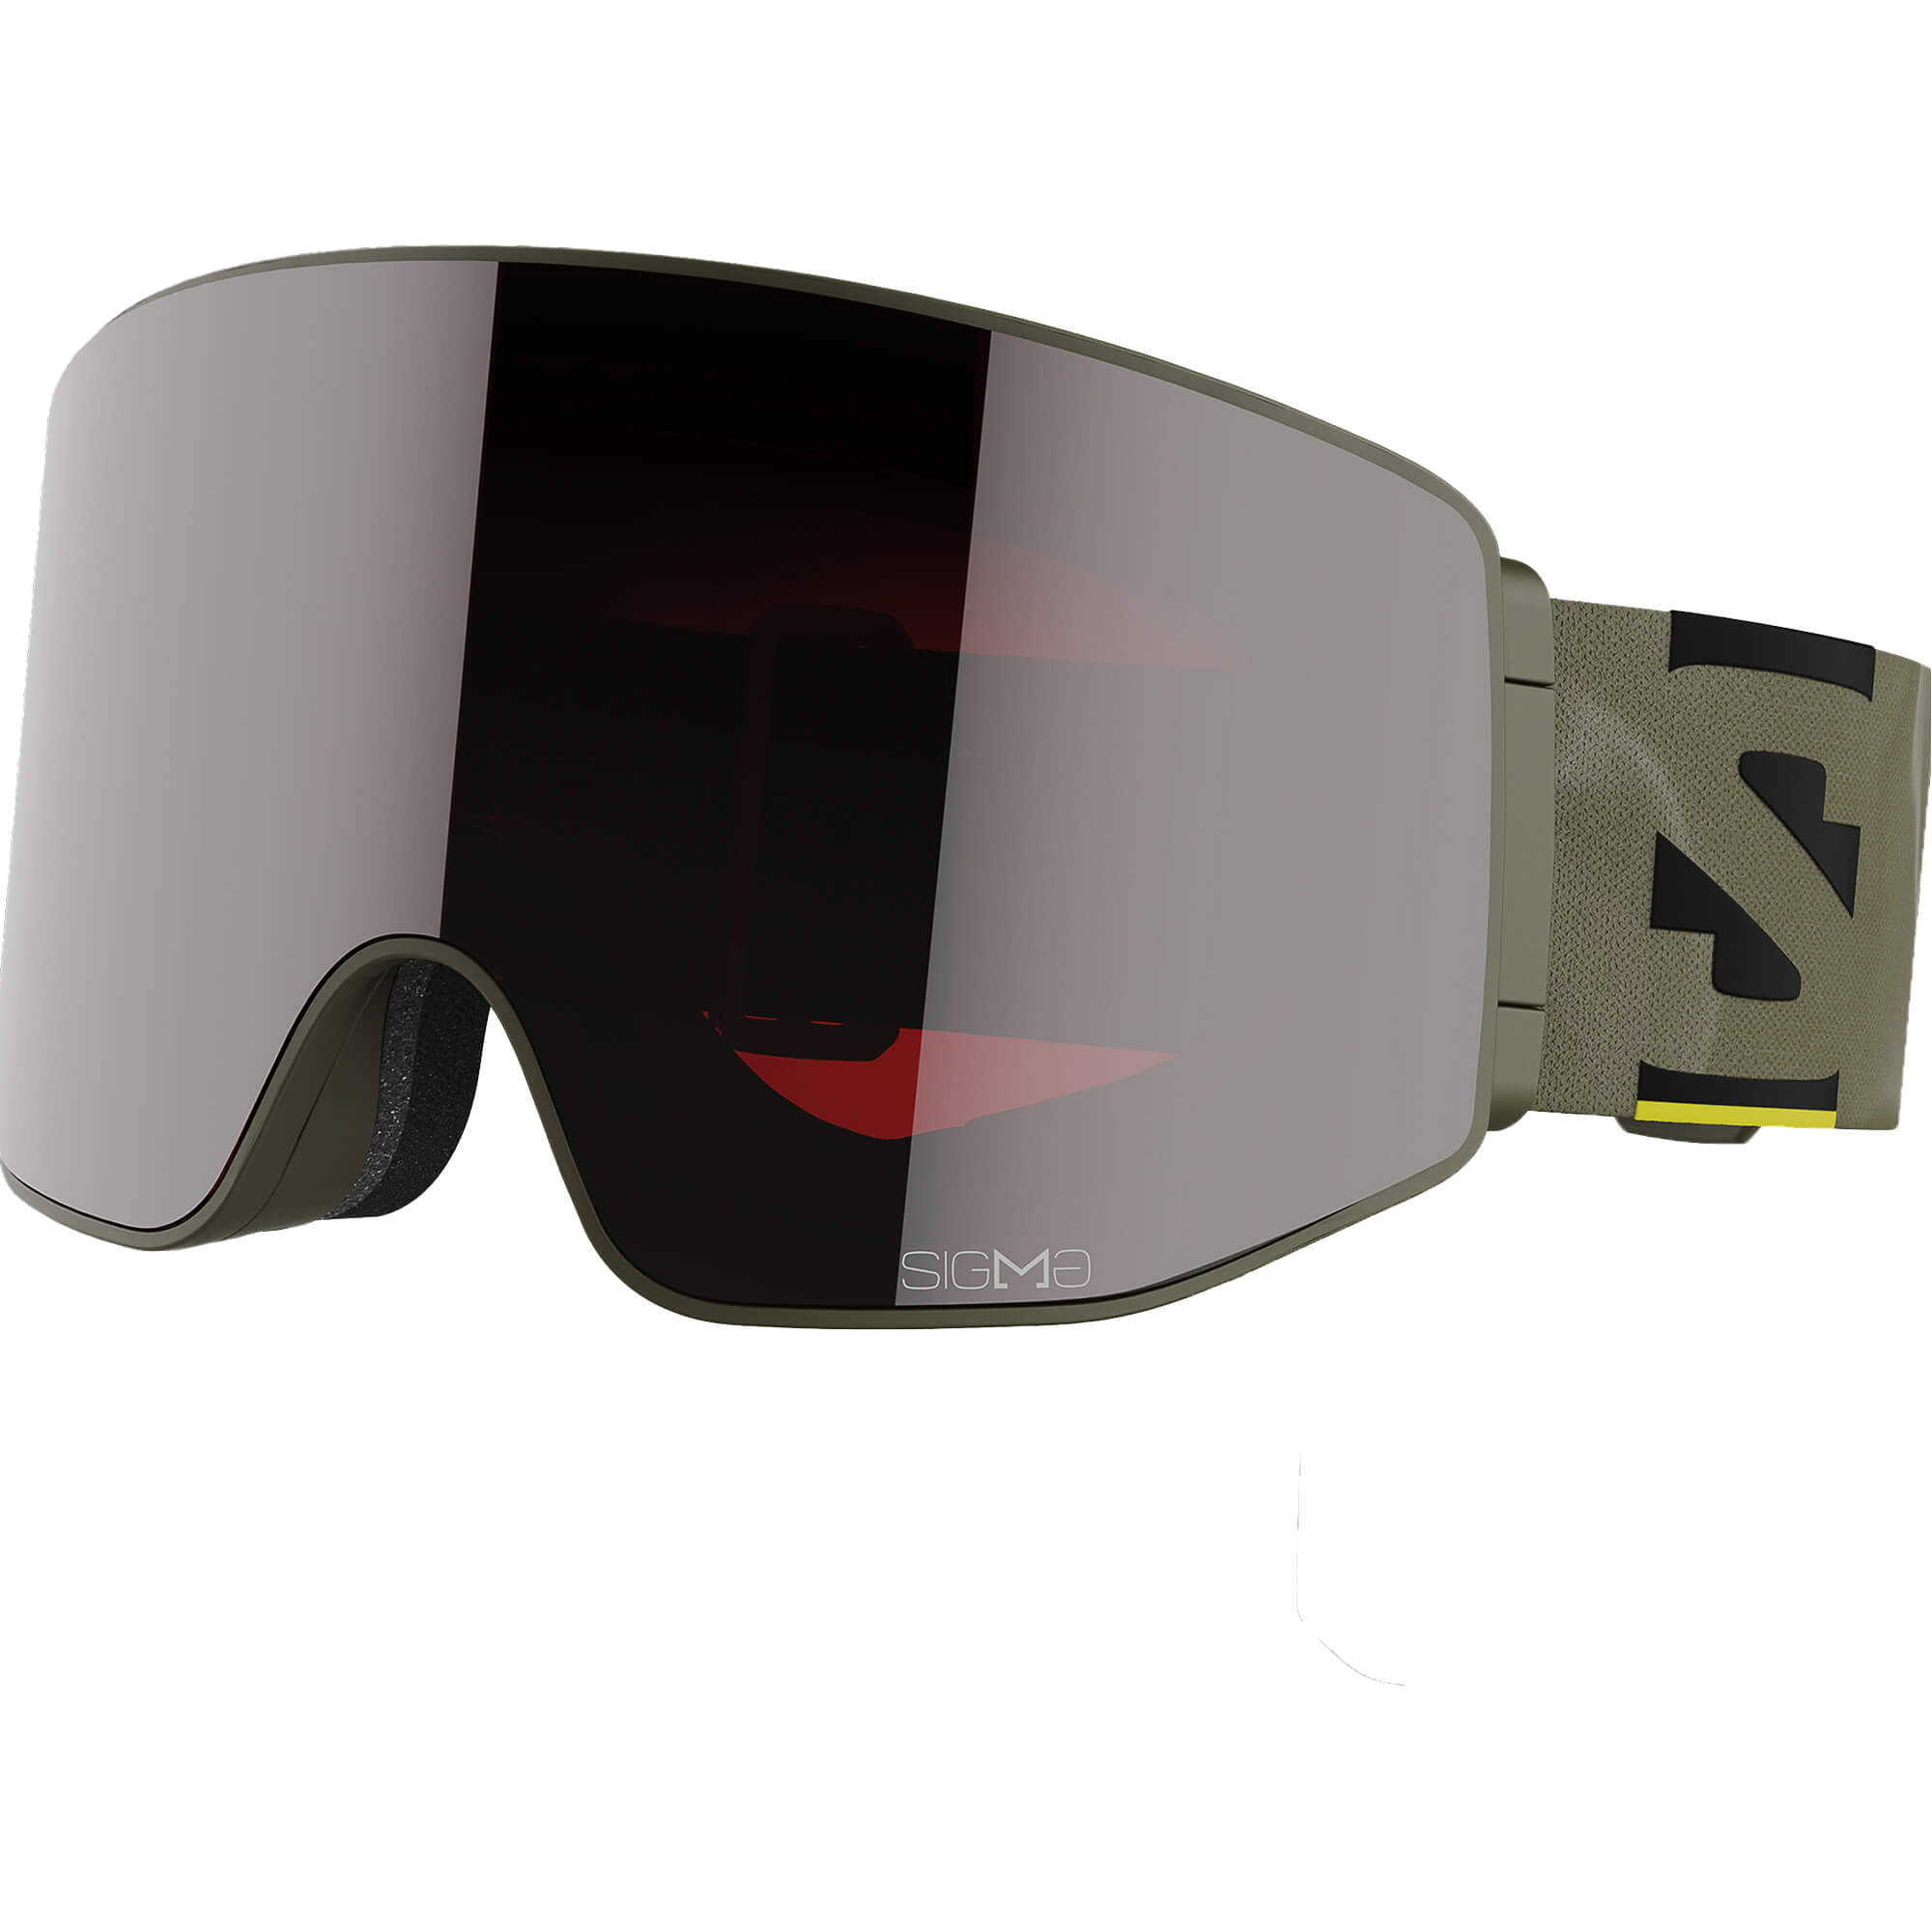 Salomon Sentry Prime Snowboard/Ski Goggles